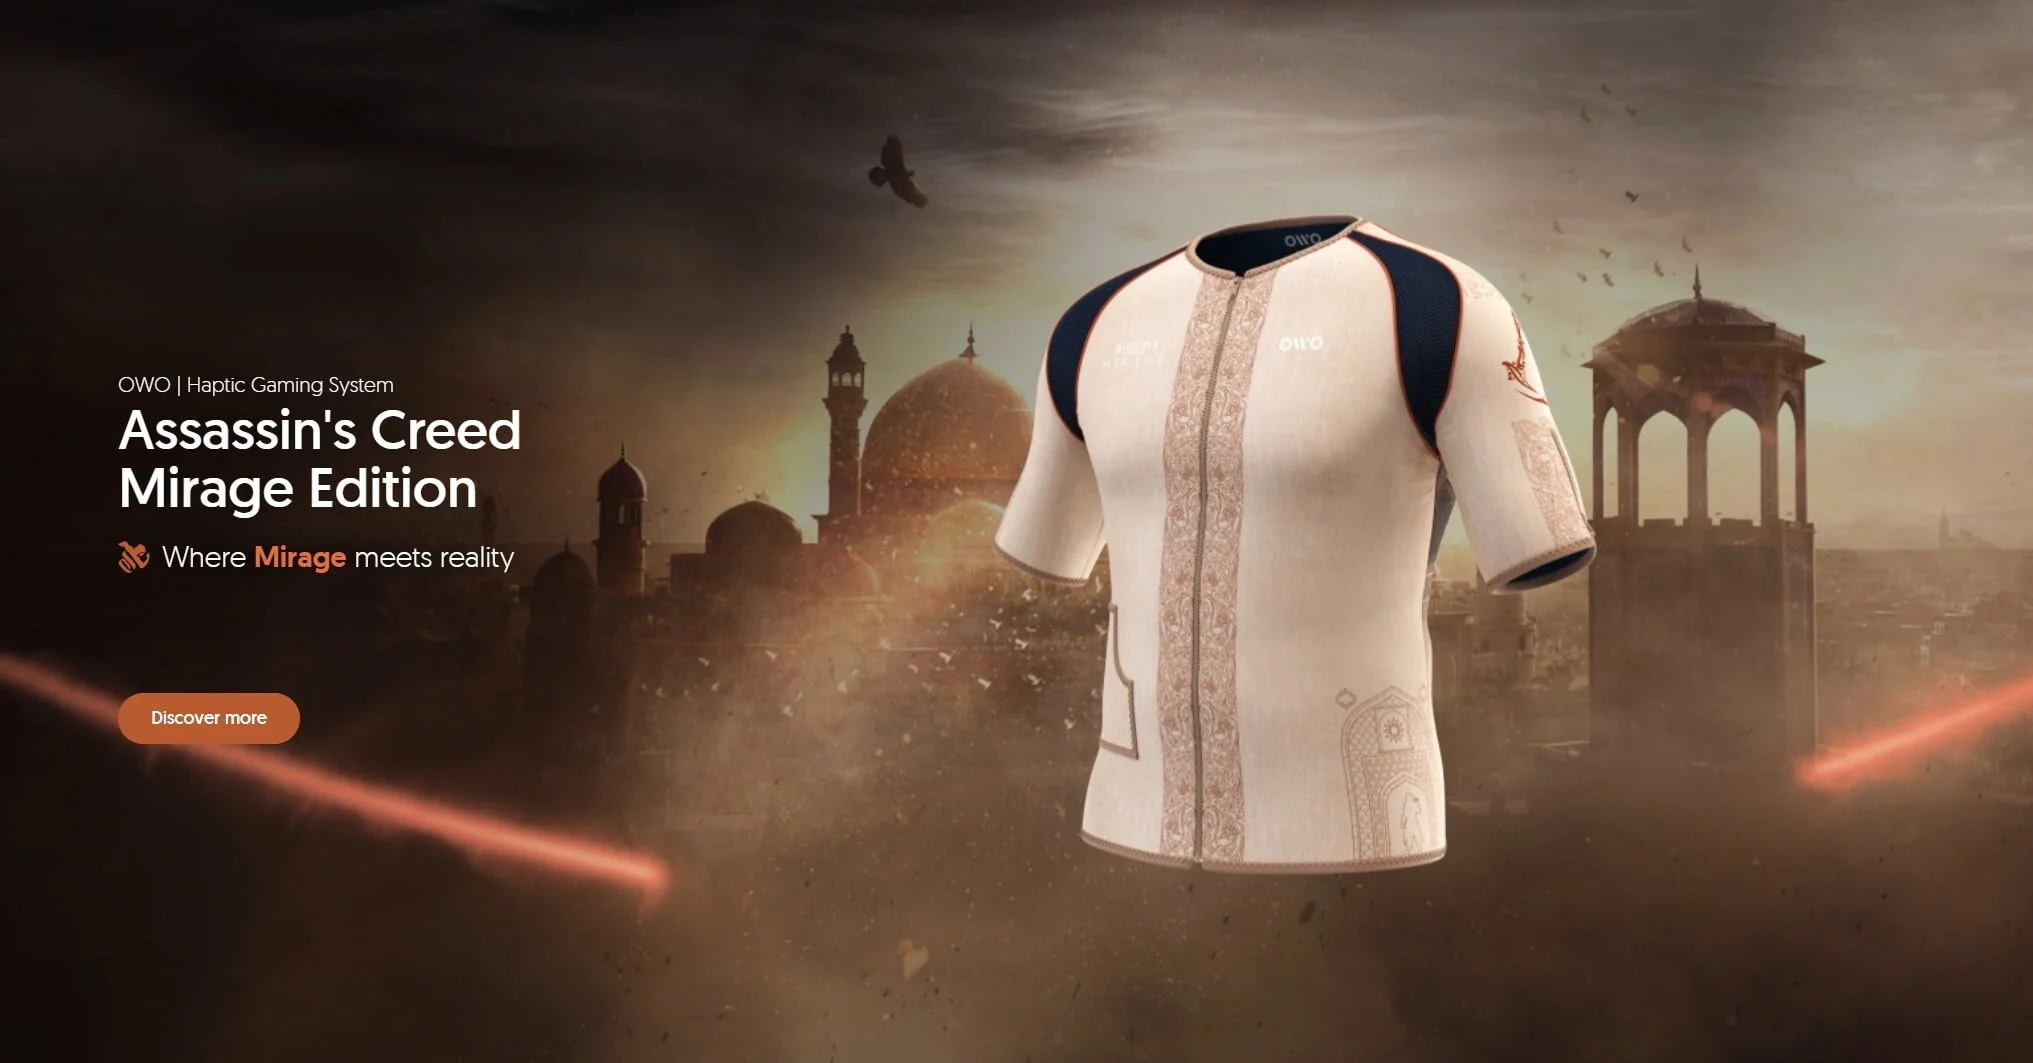 По мотивам Assassin's Creed Mirage выпустят футболку с тактильной отдачей - фото 1